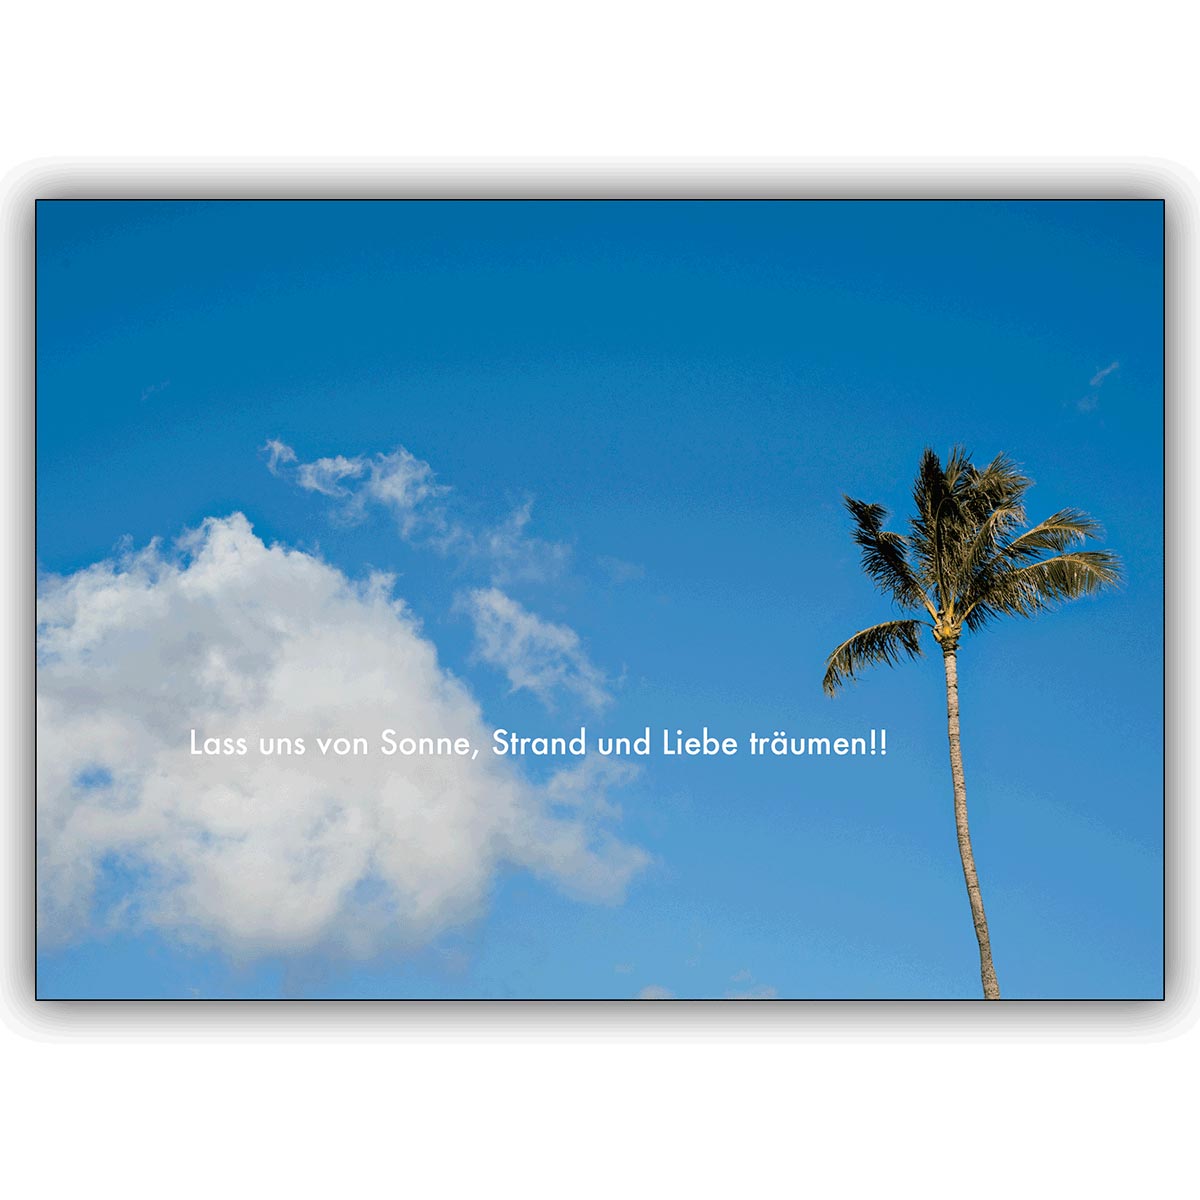 Romantische Strand Grußkarte: Lass uns von Sonne, Strand und Liebe träumen!!